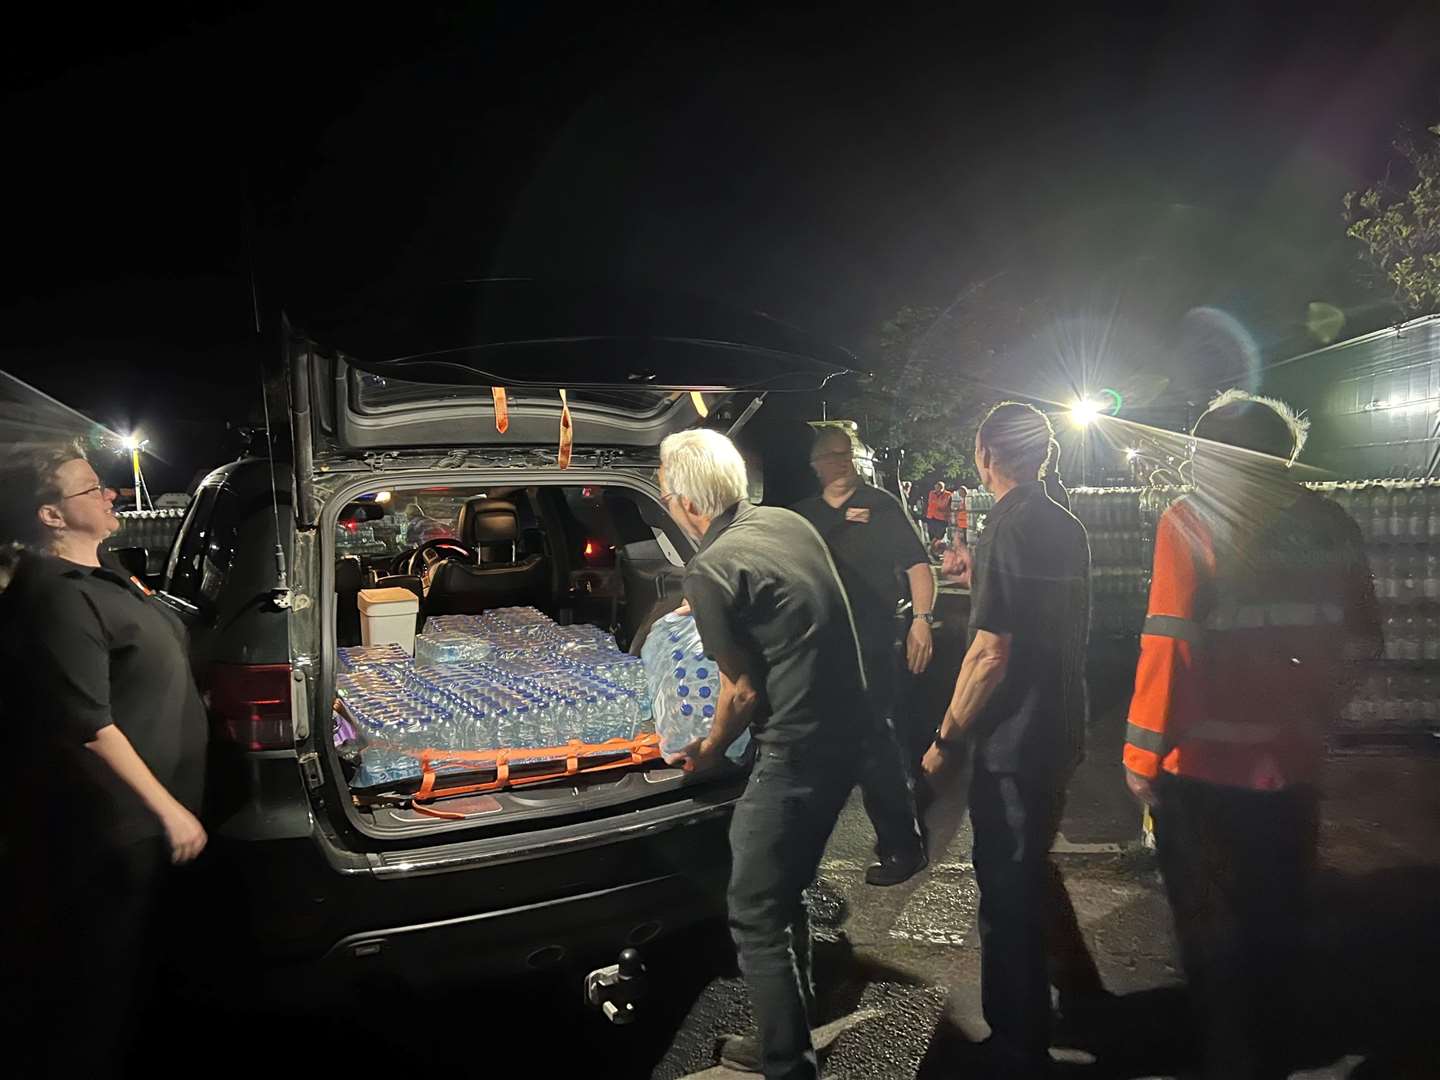 15 South East 4x4 Response volunteers helped distribute water last night